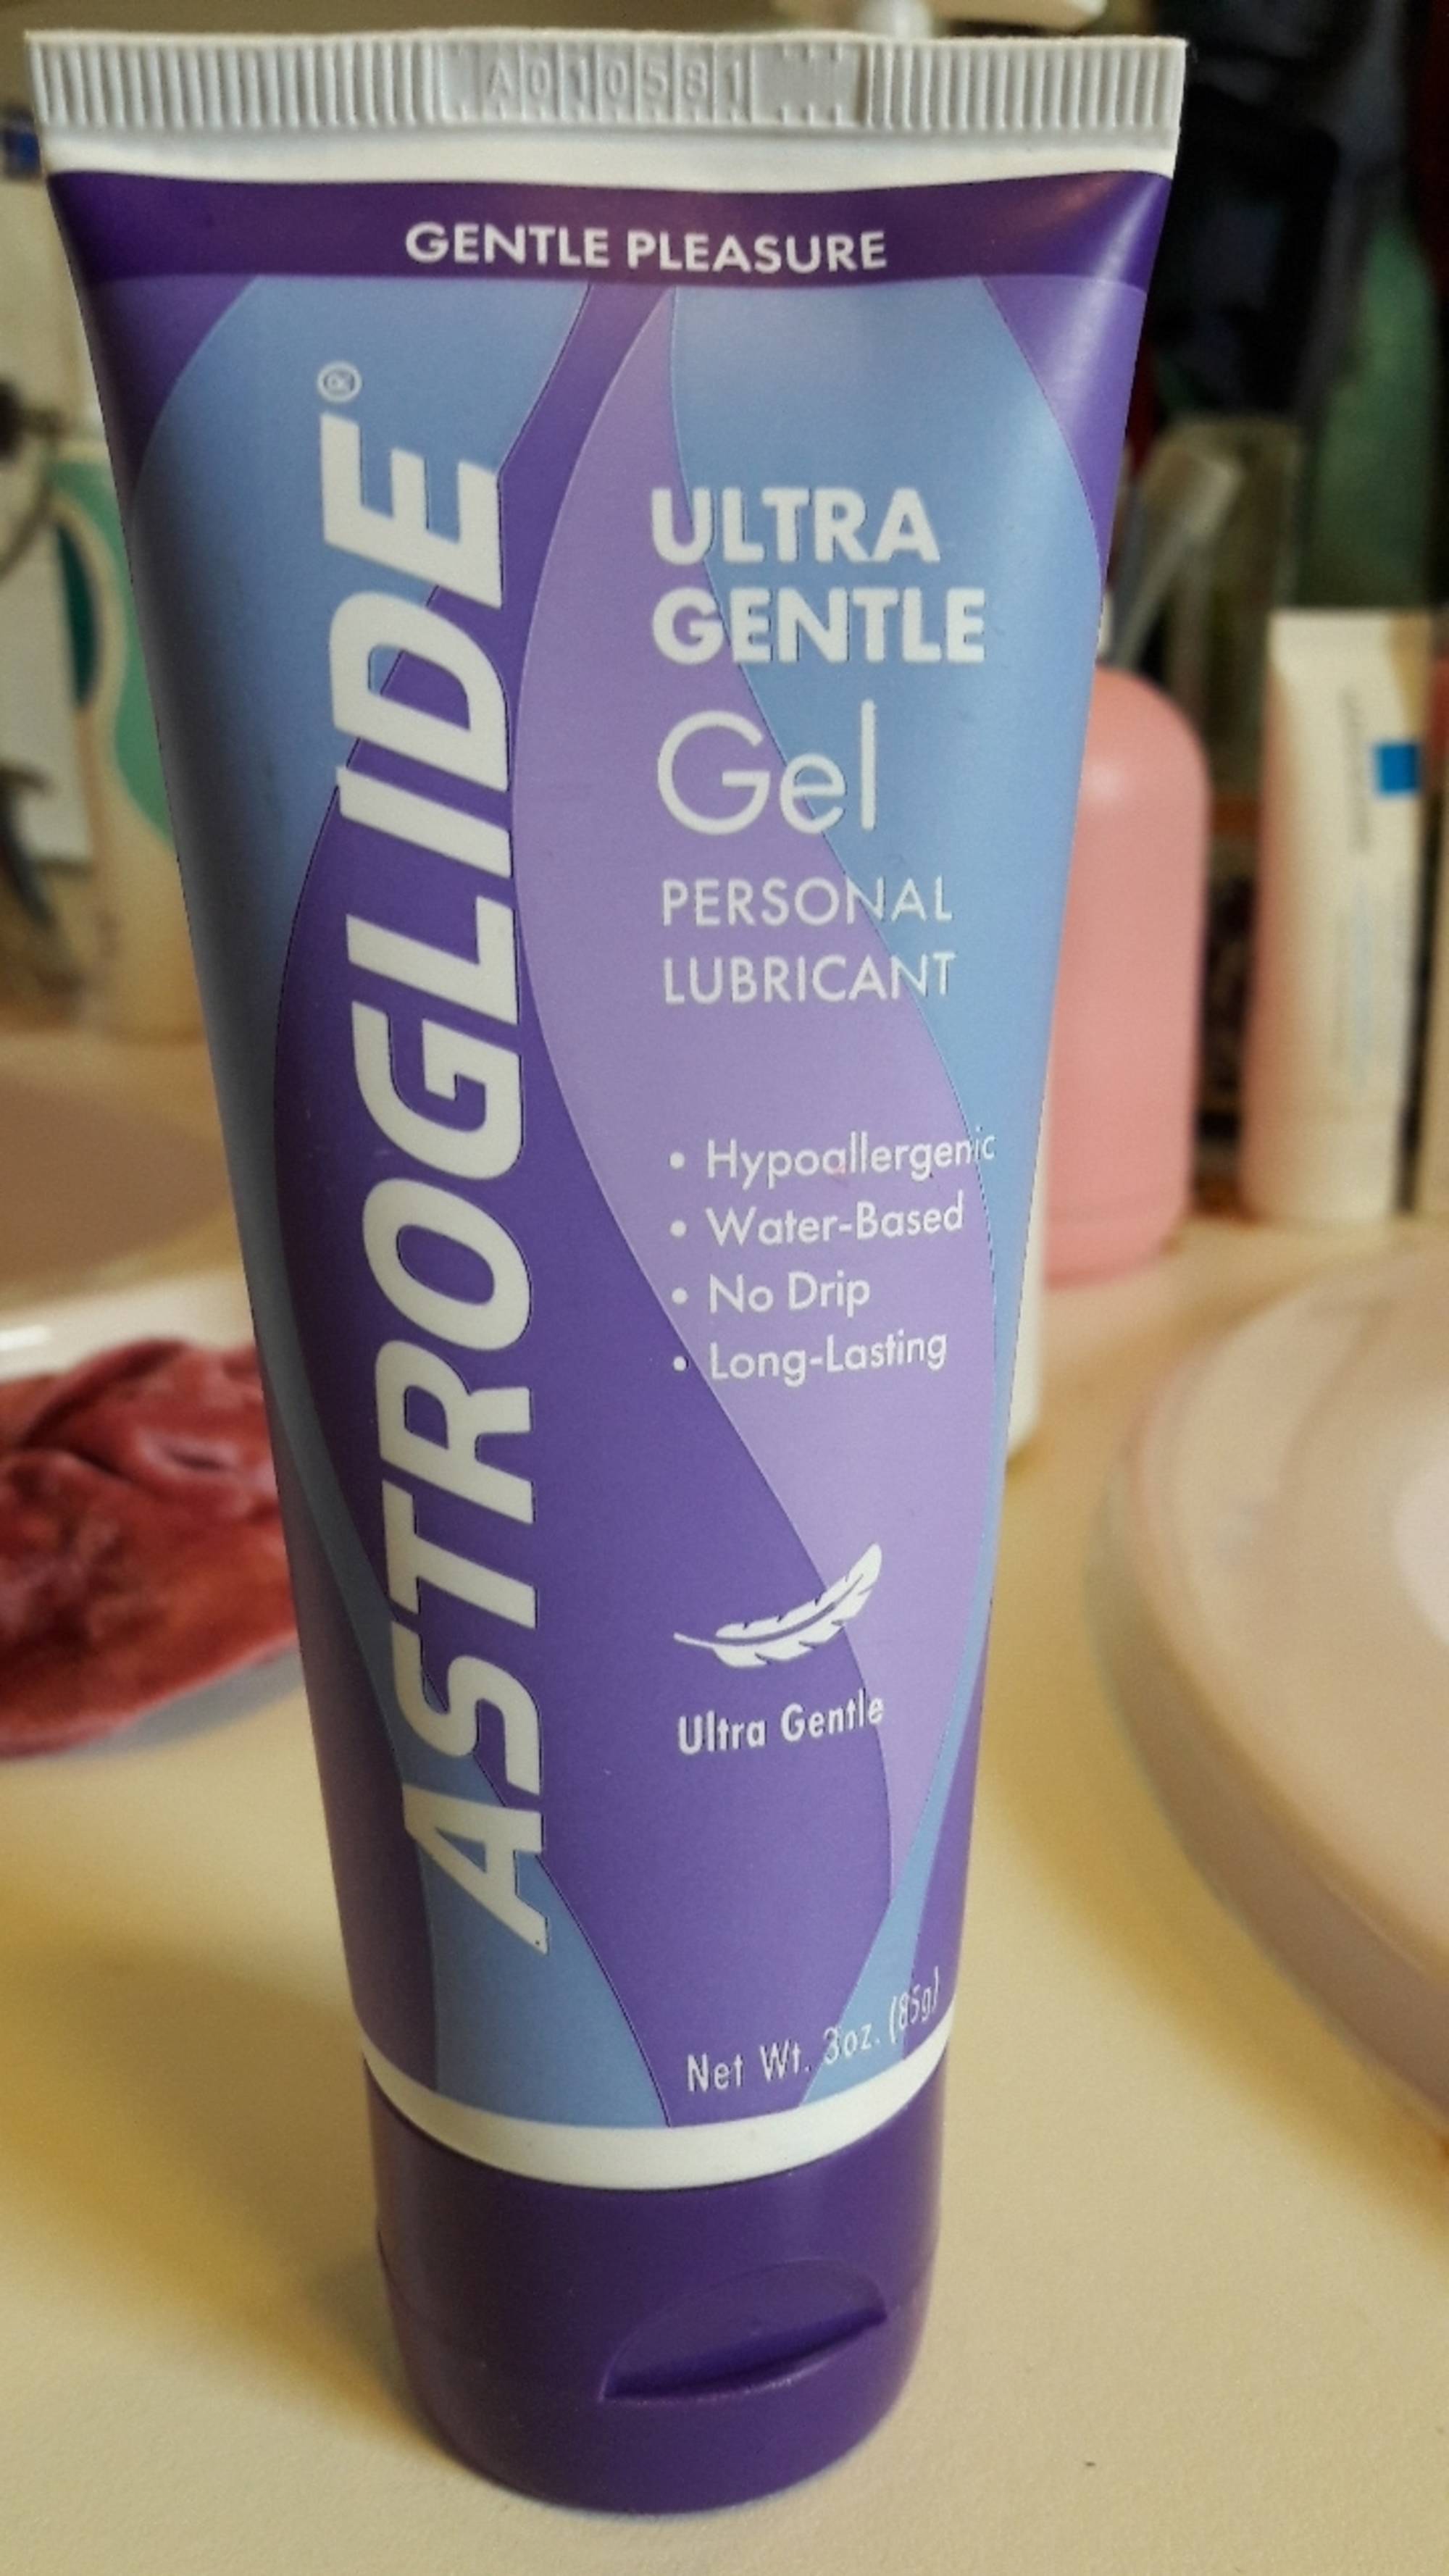 ASTROGLIDE - Ultra gentle - Gel personal lubricant